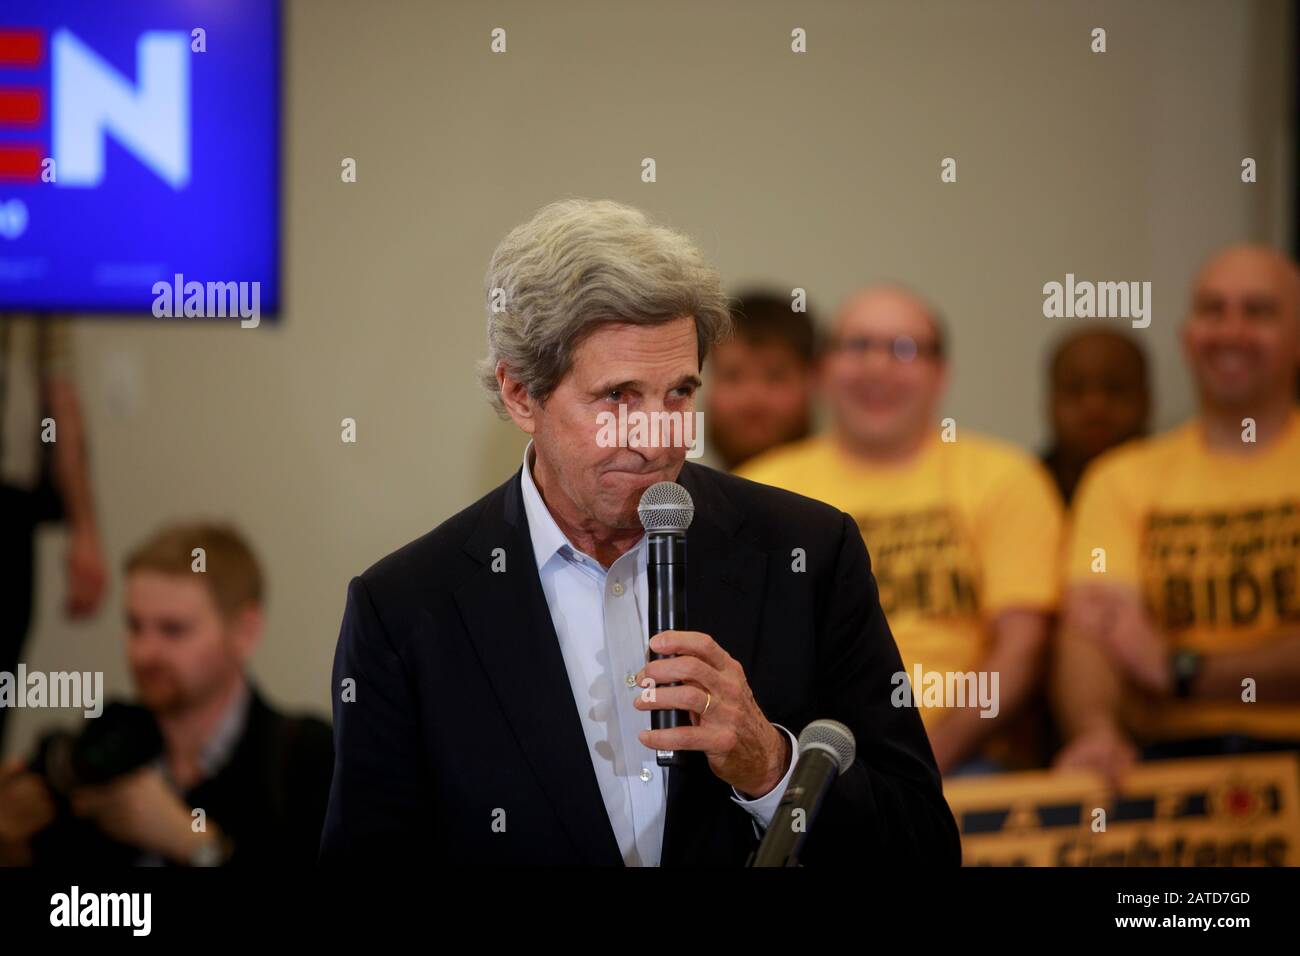 02012020 - North Liberty, Iowa, USA: John Kerry spricht, während der demokratische Präsidentschaftskandidat und ehemalige Vizepräsident Joe Biden während einer Wahlkampfveranstaltung in Iowa Caucus am Samstag, 1. Februar 2020 in North Liberty, Iowa, Wahlkampf führt. Stockfoto